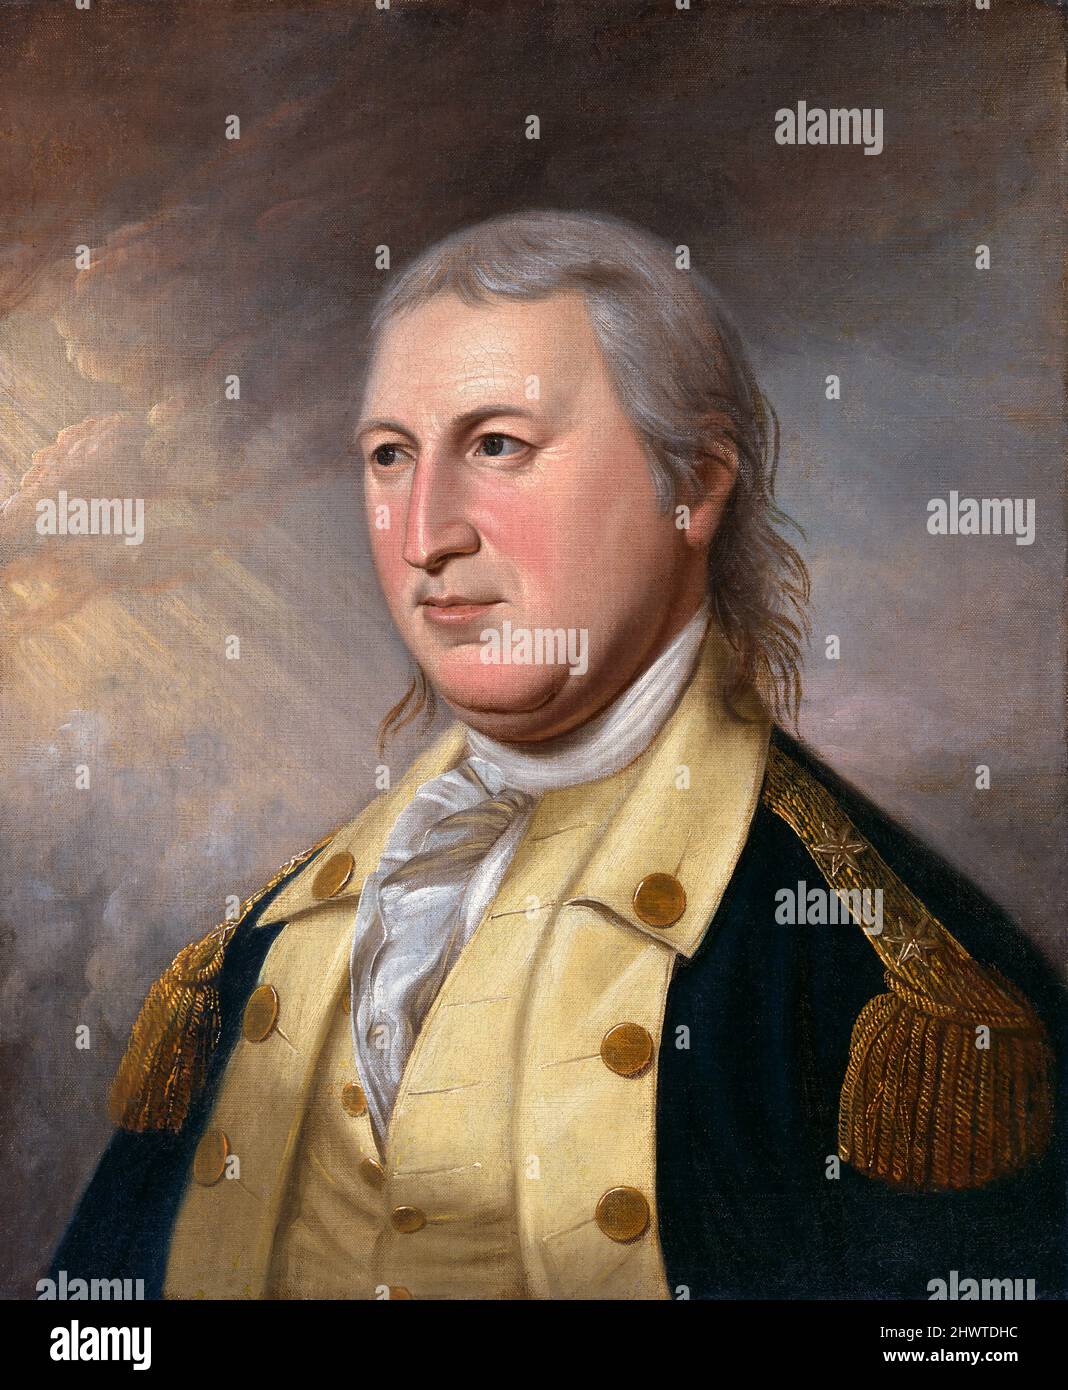 Horatio Gates (1727-1806) von James Peale, Öl auf Leinwand, 1782. General Horatio Gates war ein amerikanischer General während des Unabhängigkeitskrieges und ist berühmt für seine Siege bei den Schlachten von Saratoga. Stockfoto